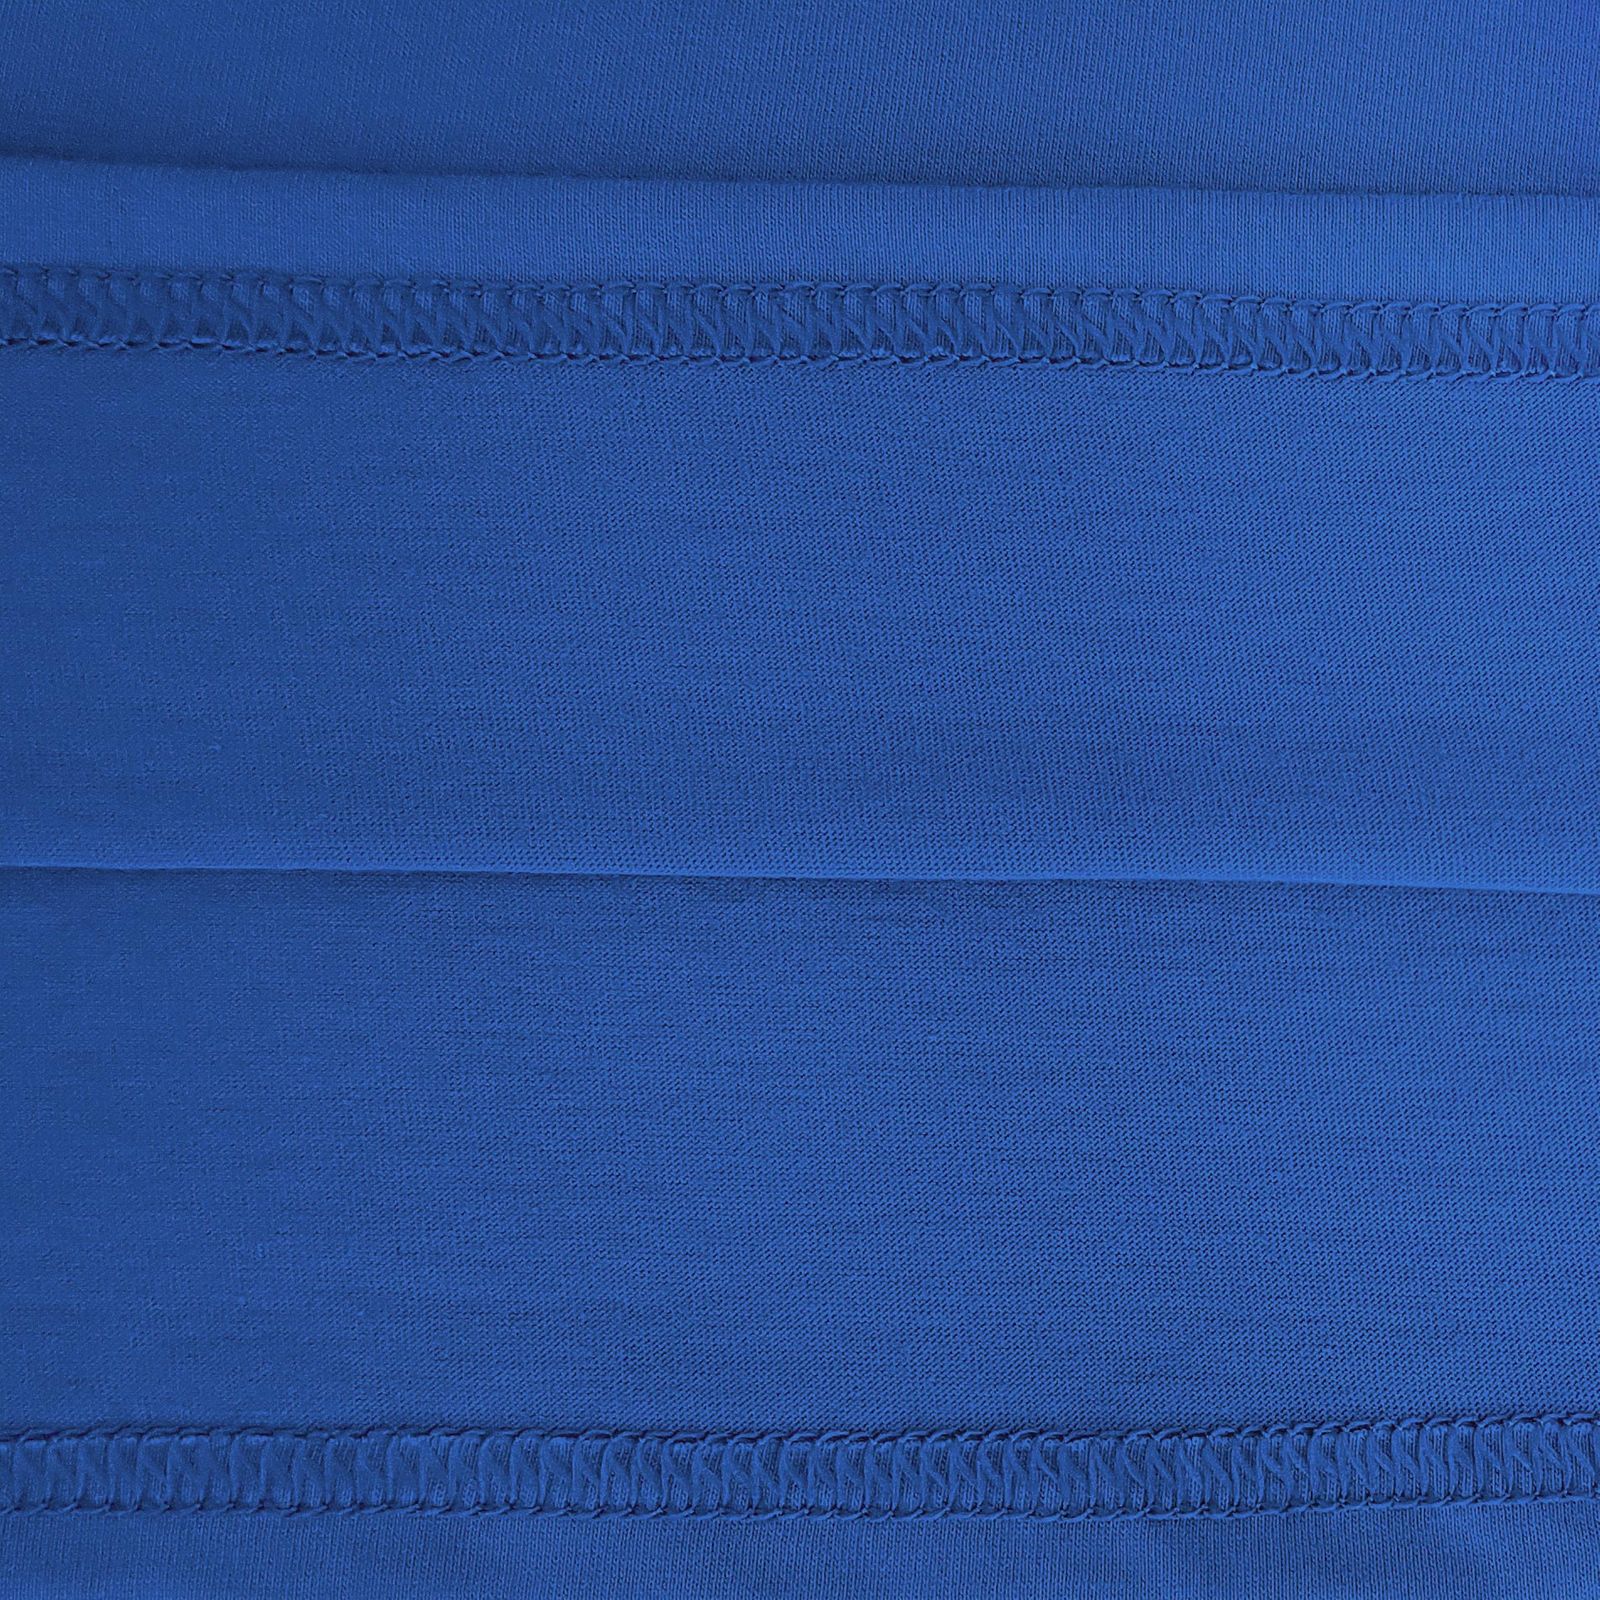 زیرپوش آستین دار مردانه ماییلدا مدل پنبه ای کد 4710 رنگ آبی -  - 9